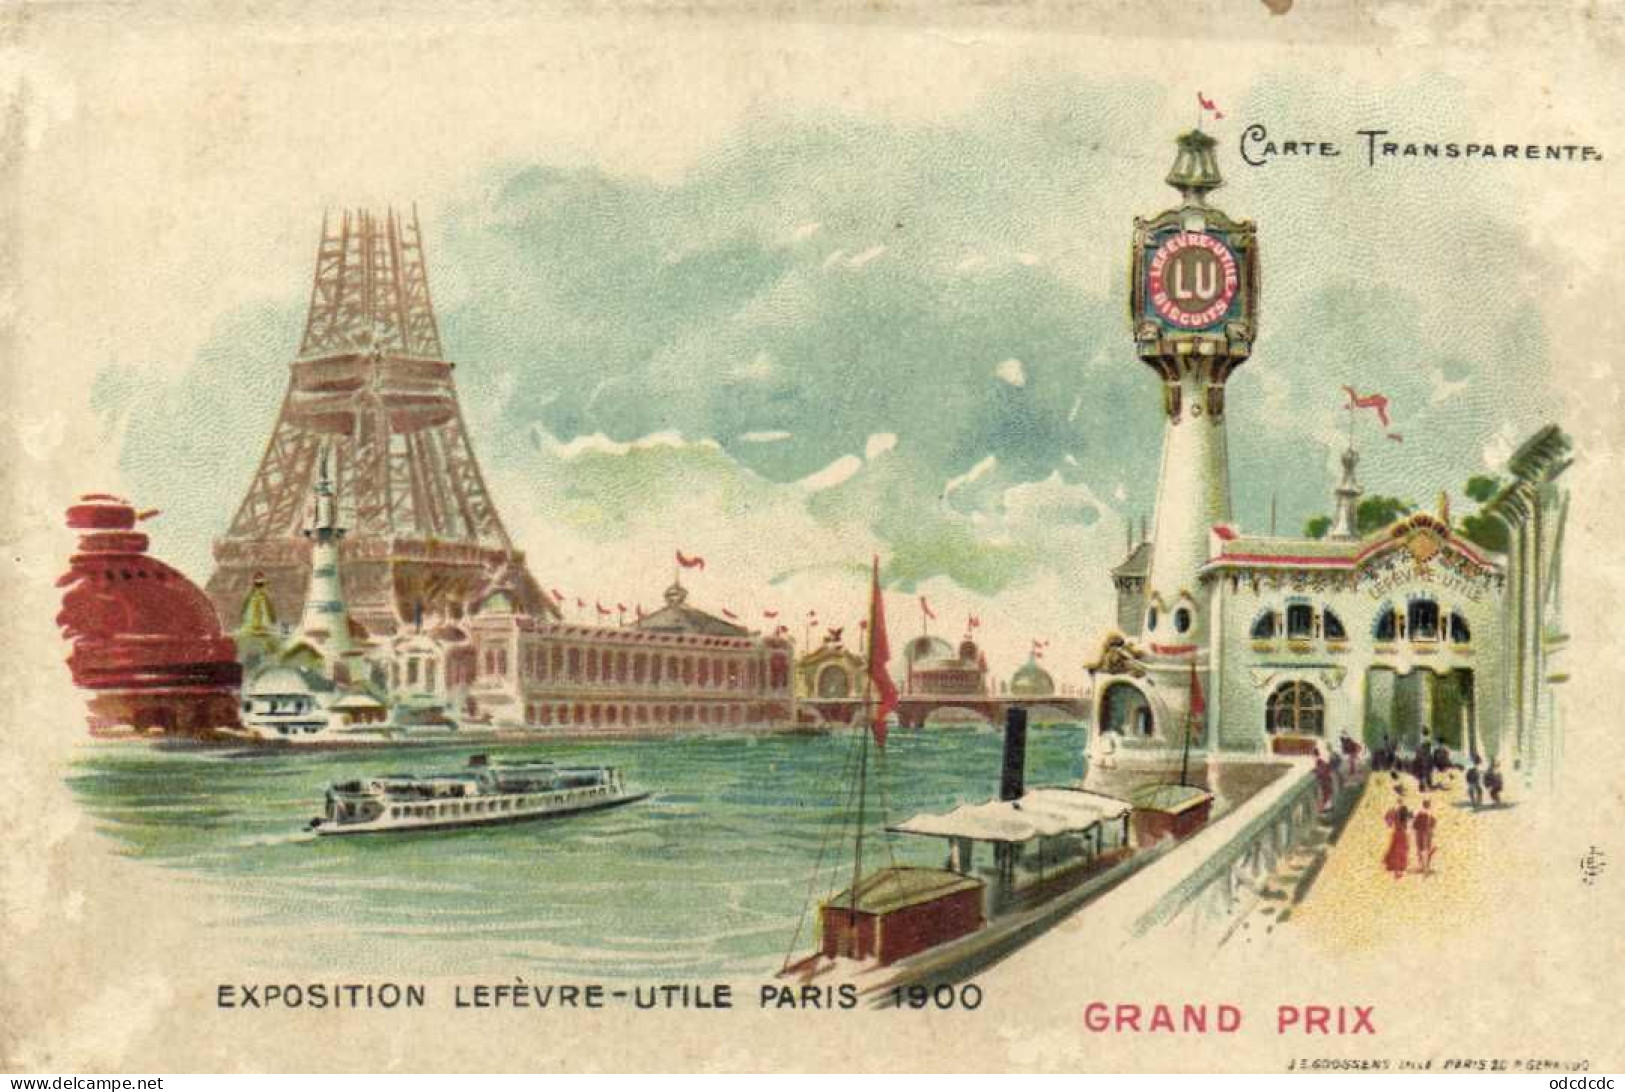 EXPOSITION LEFEVRE UTILE  PARIS 1900 GRAND PRIX  Carte Transparente Pionnière RV - Expositions